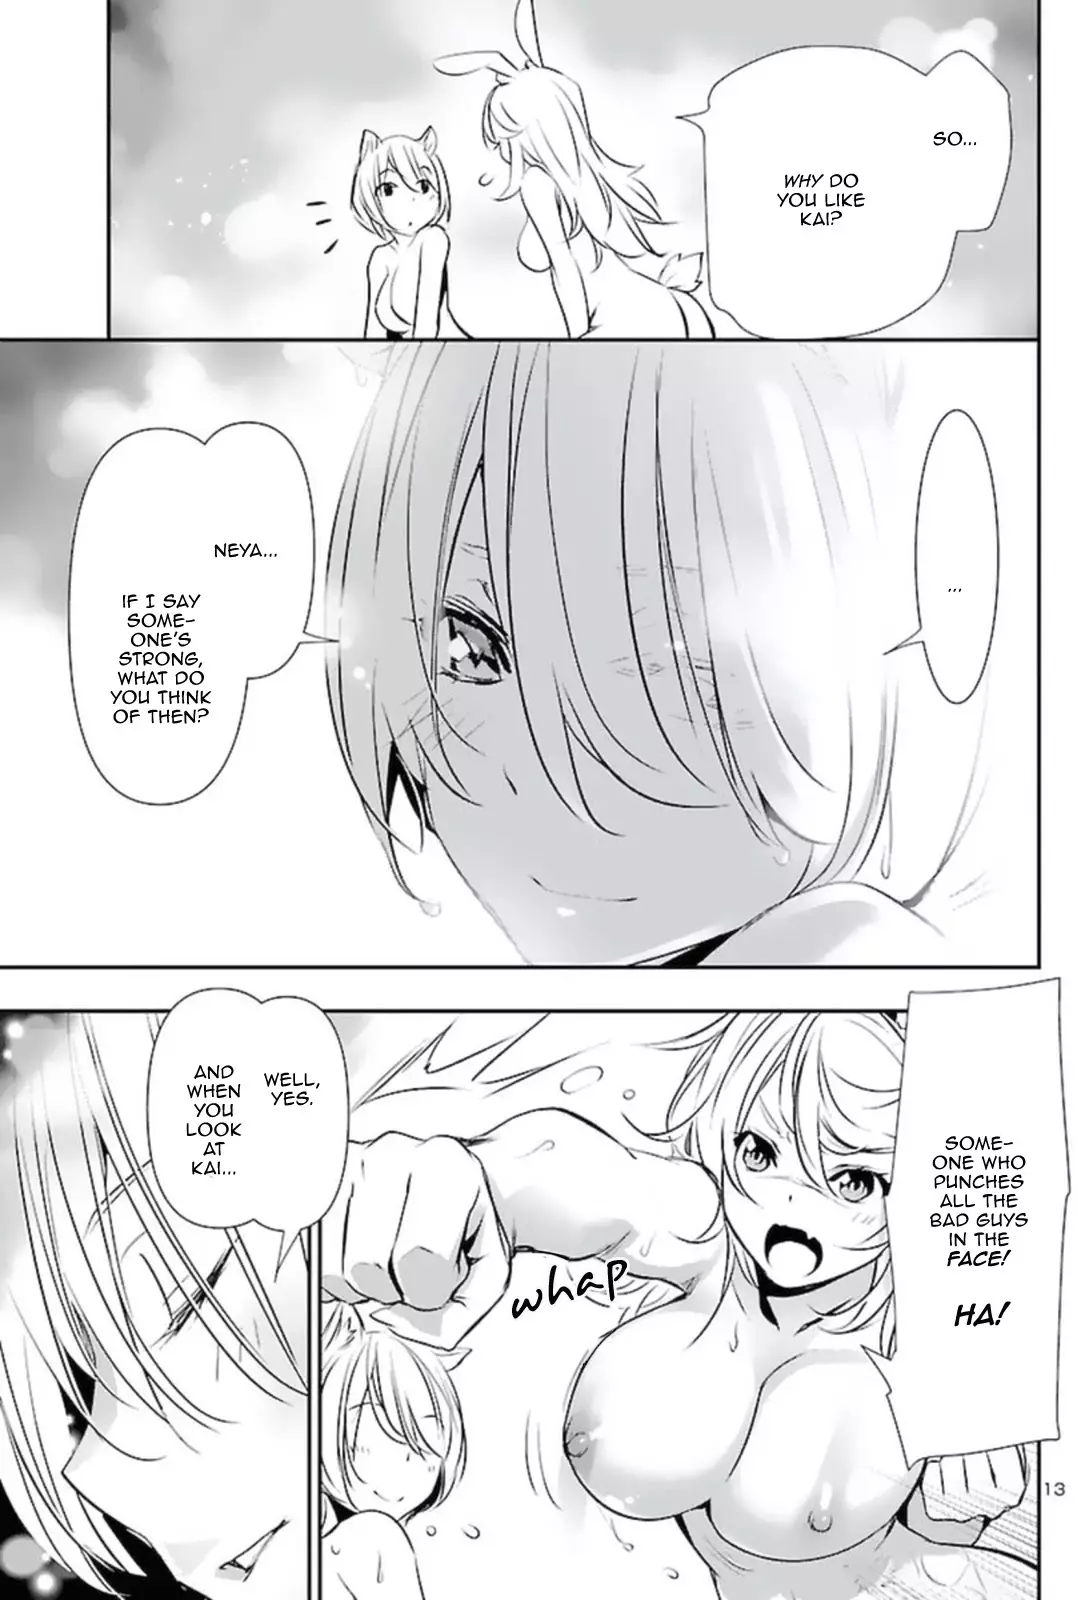 Shinju no Nectar - 57 page 13